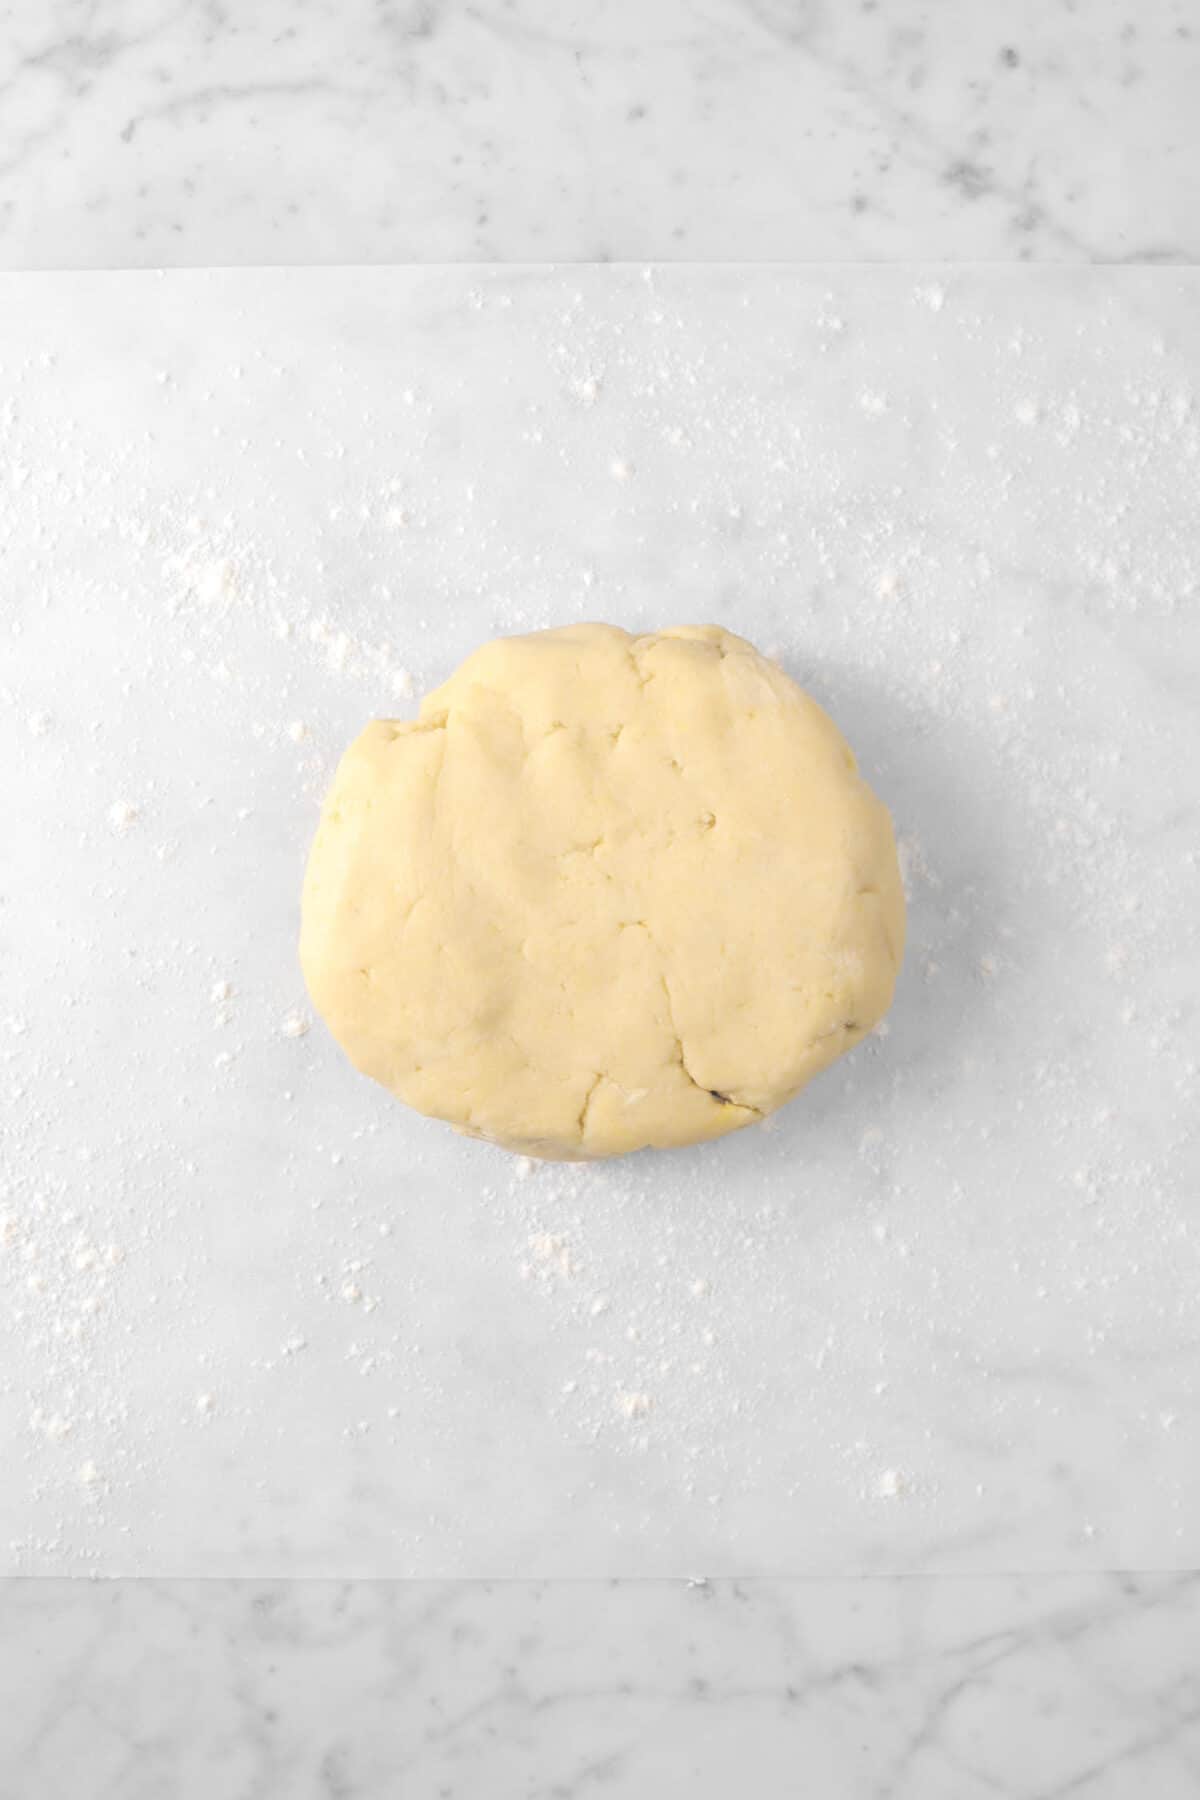 pie dough disc on a piece of parchment paper